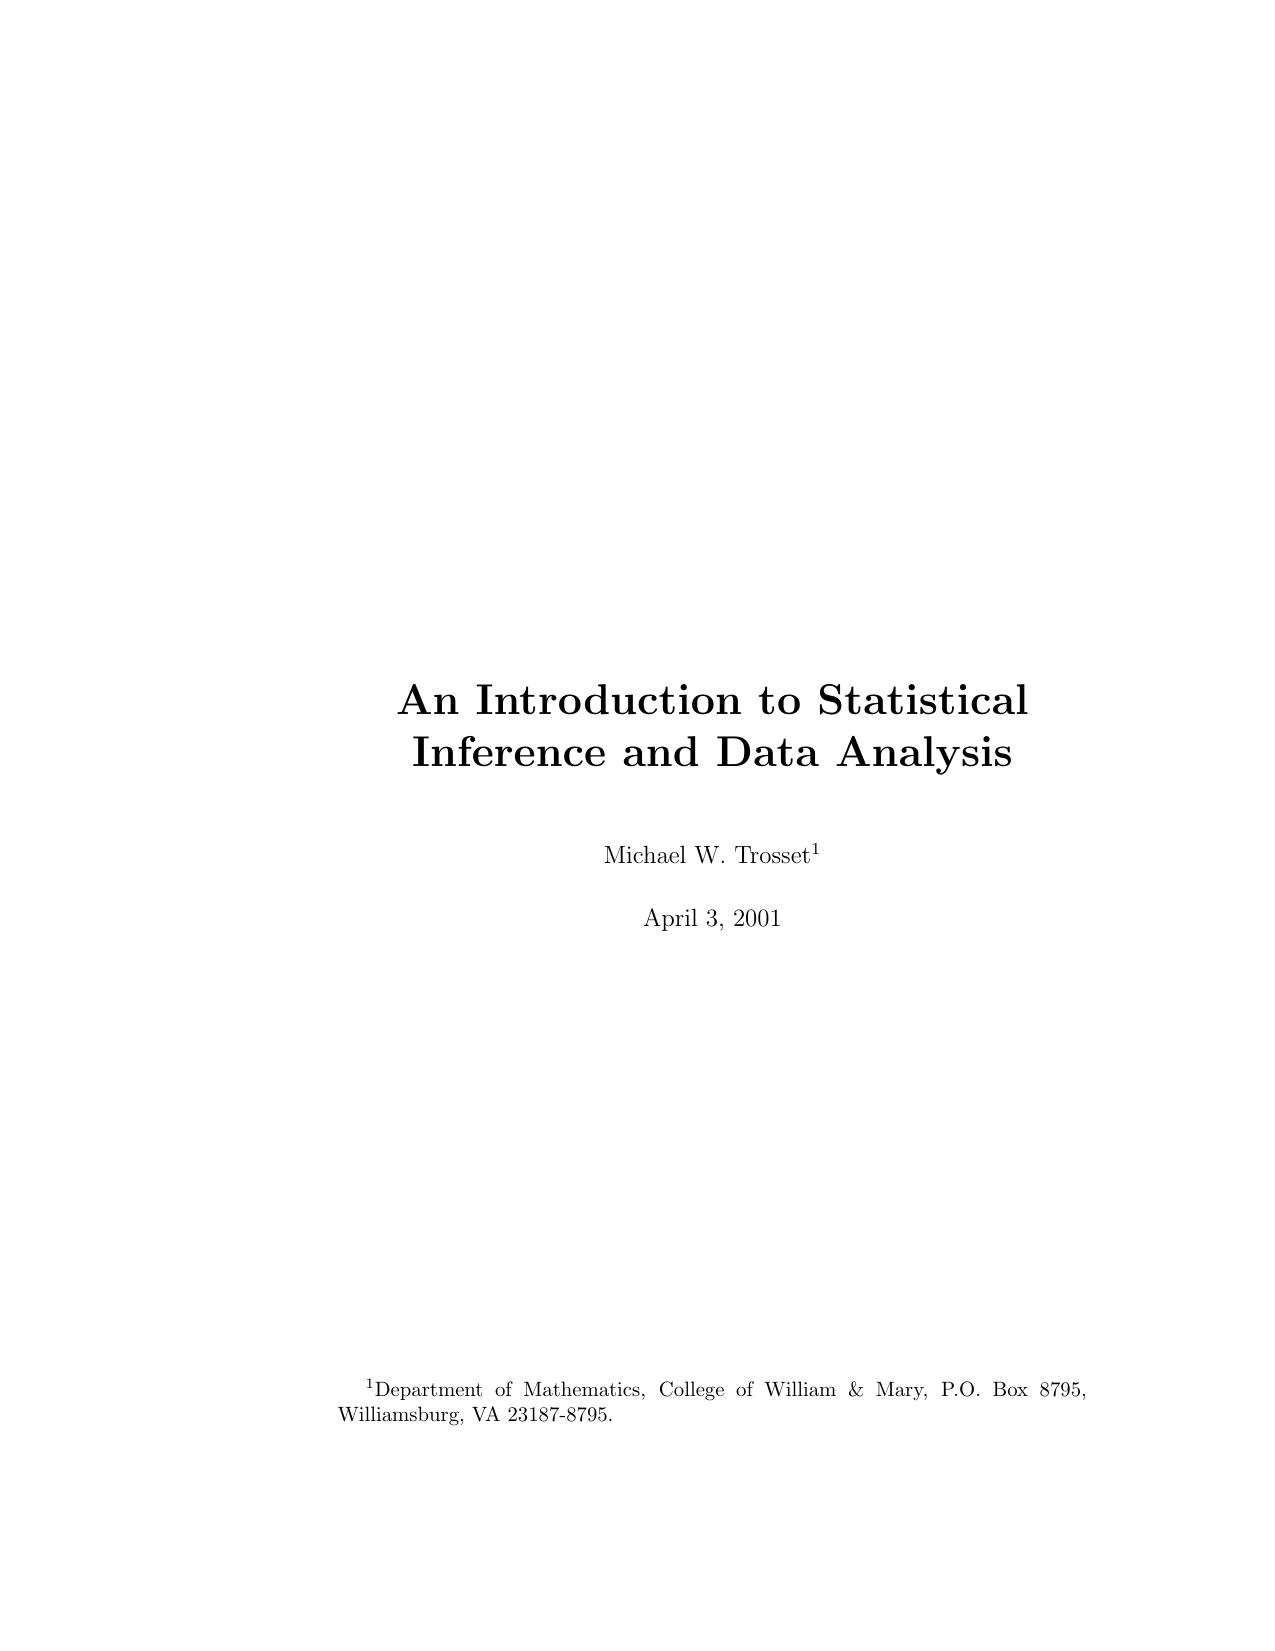 Data Analysis - Statistics